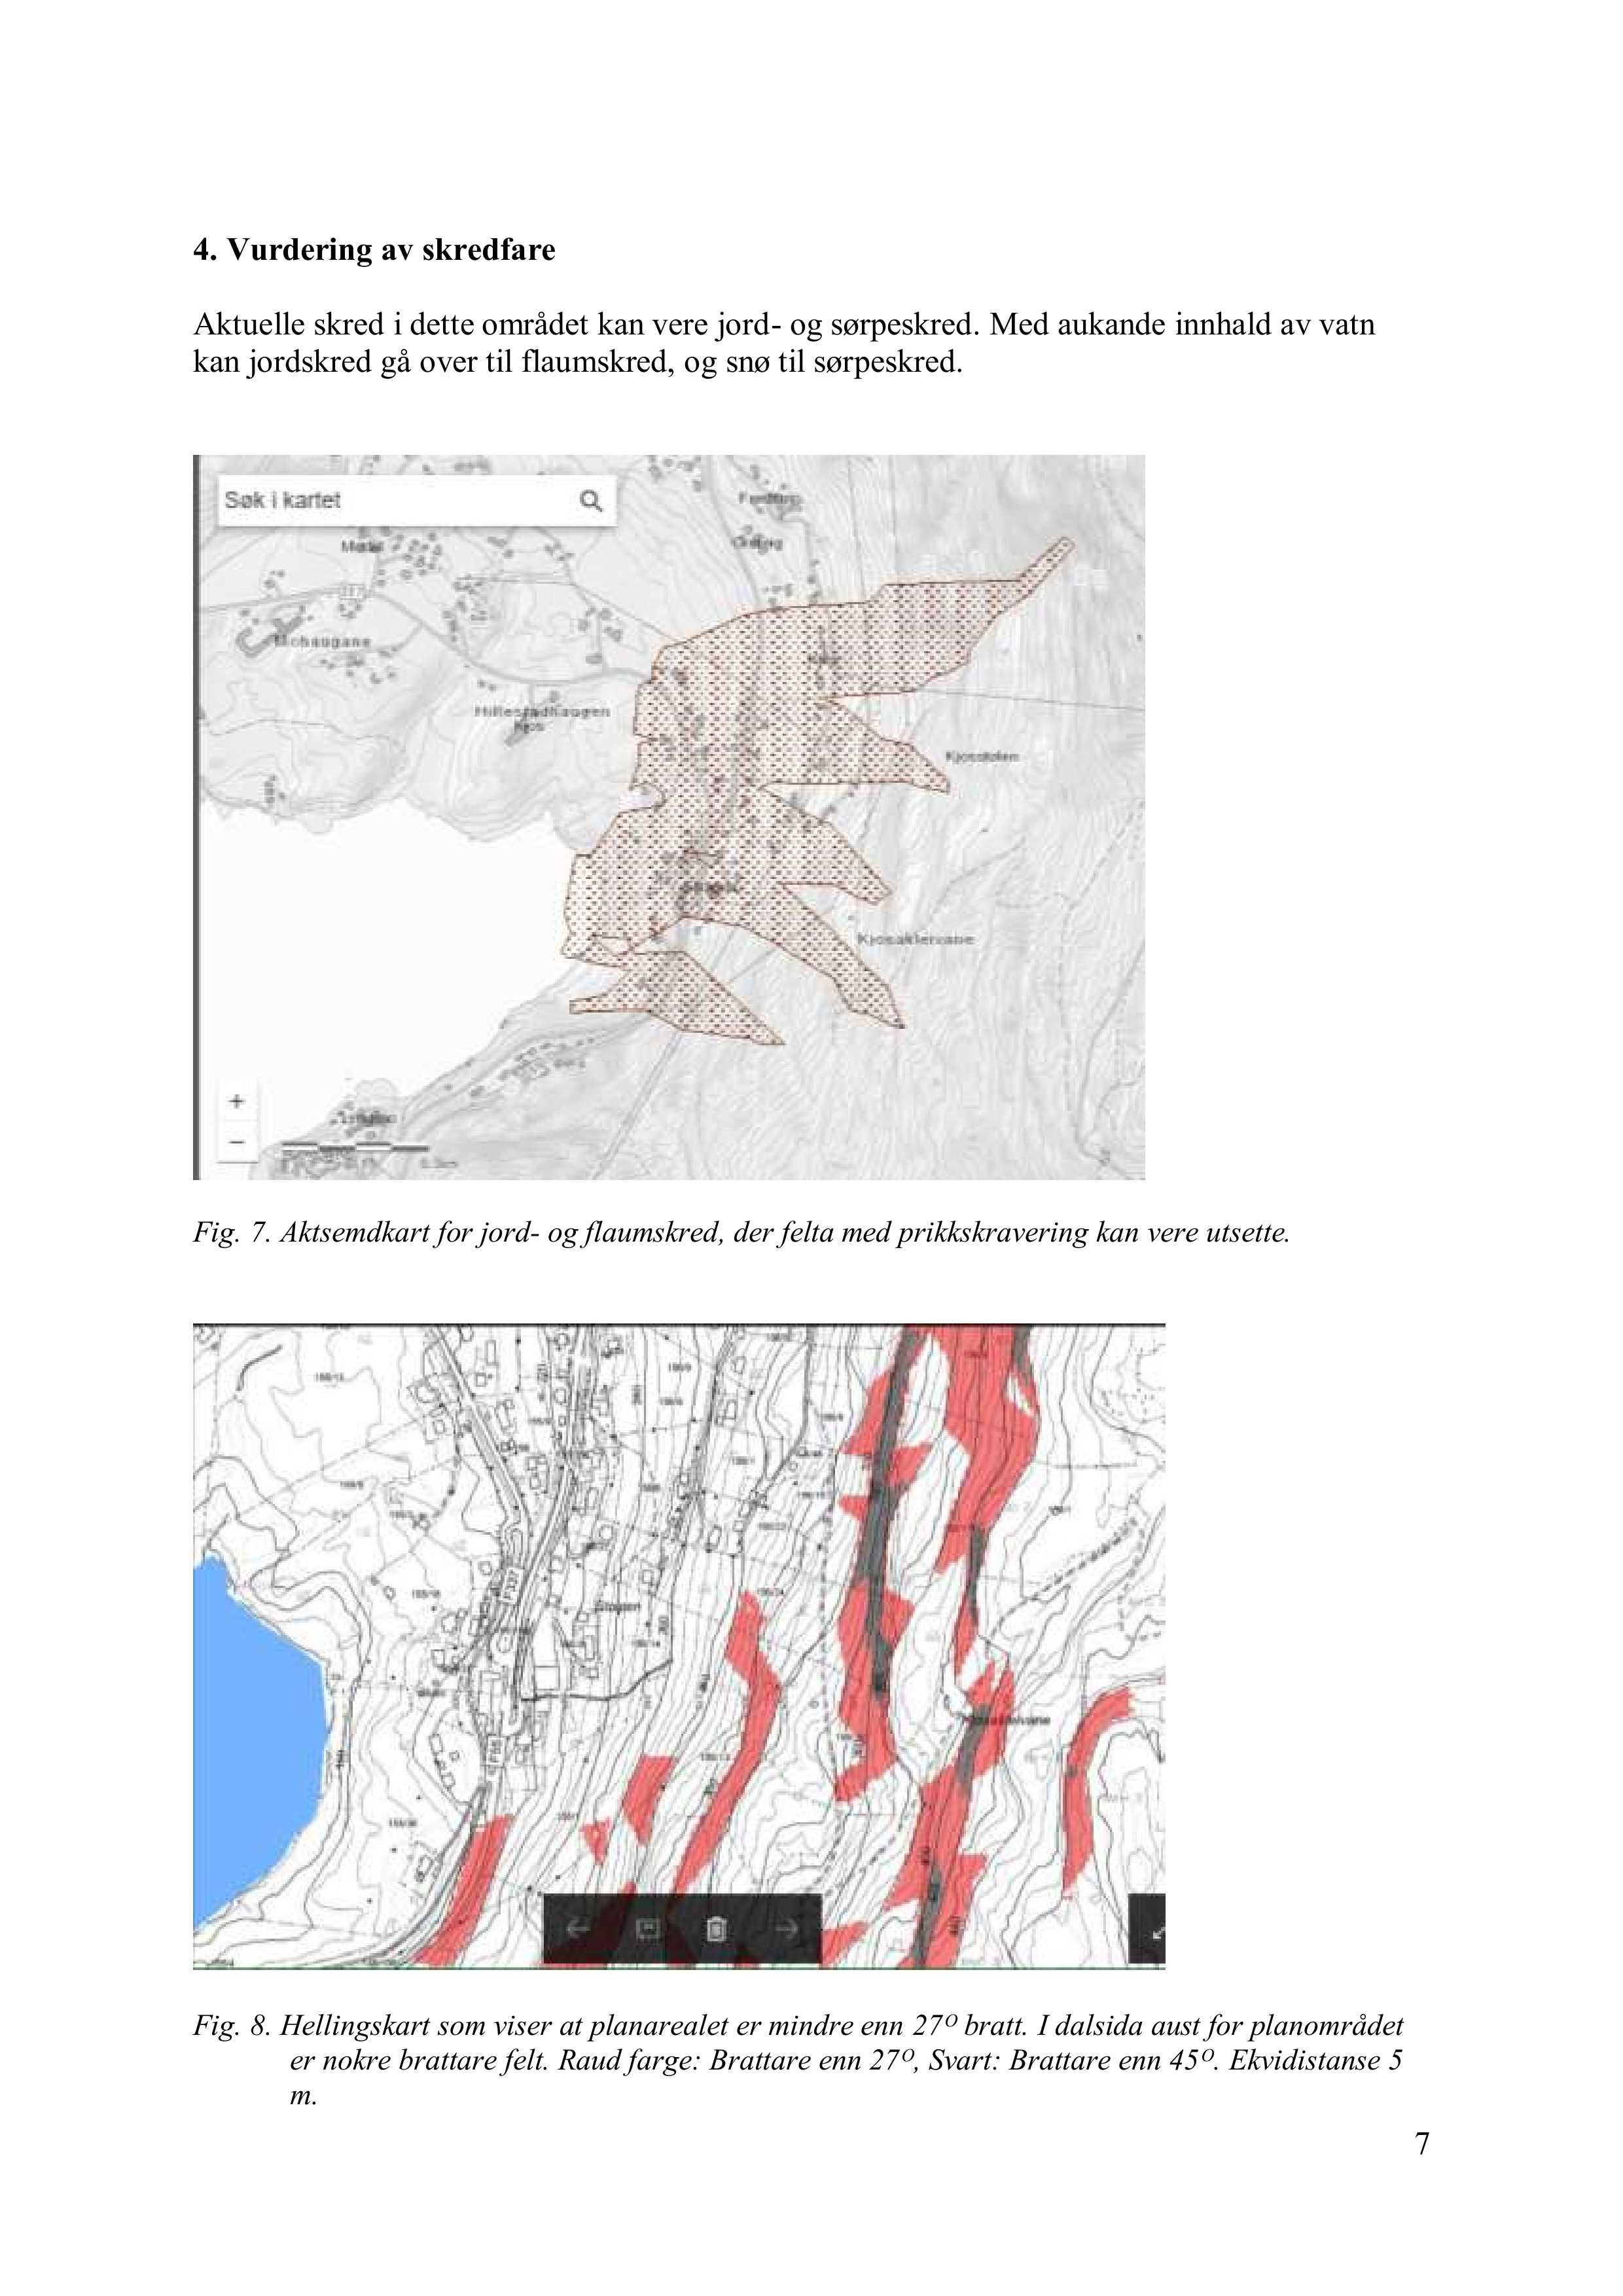 4. V urdering av skredfare Aktuelle skred i dette området kan vere jord - og sørpeskred. Med aukande innhald av vatn kan jordskred gå over til flaumskred, og snø til sørpeskred. Fig. 7.